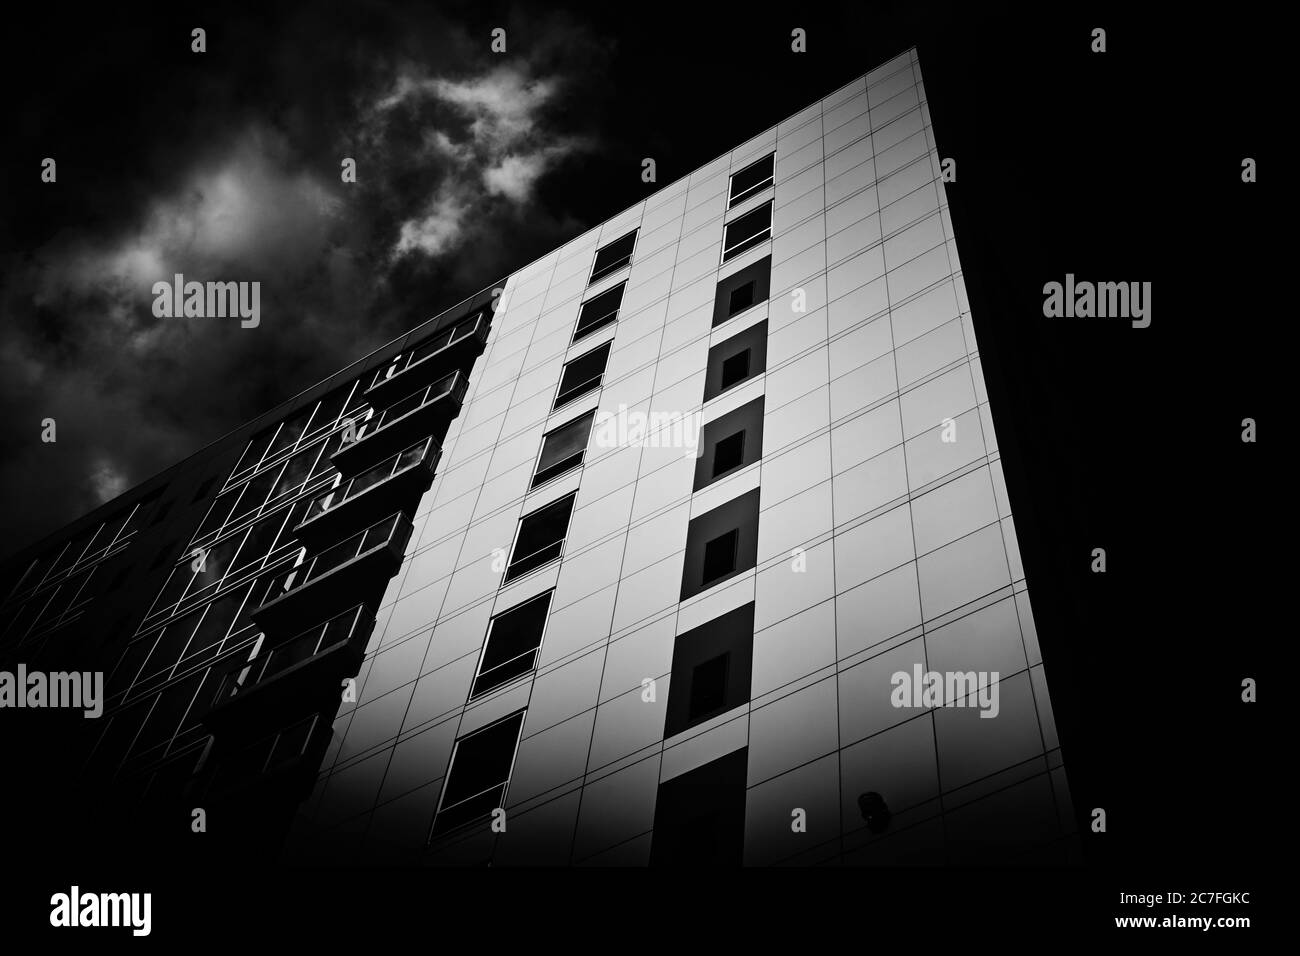 Vue en niveaux de gris d'un immeuble d'appartements sous le nuages de tempête Banque D'Images